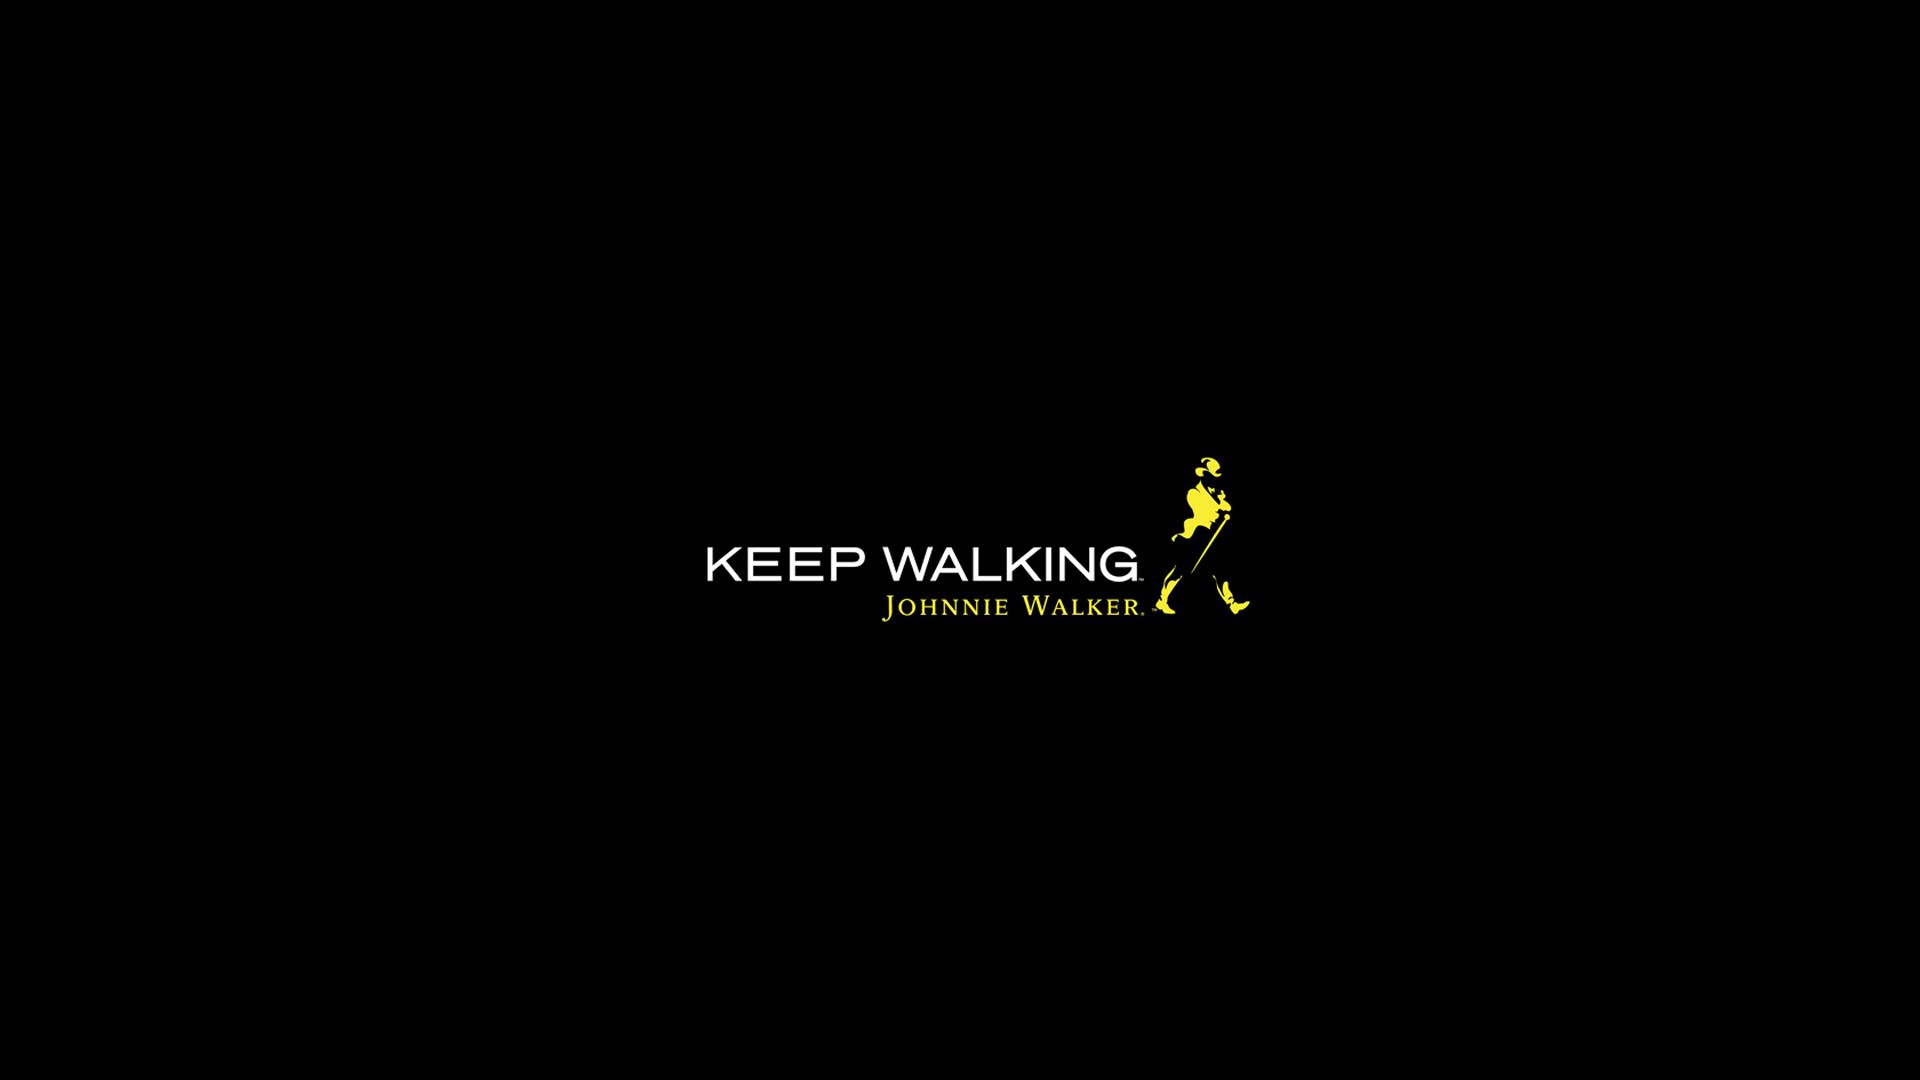 Keep Walking Johnnie Walker Image HD Wallpaper